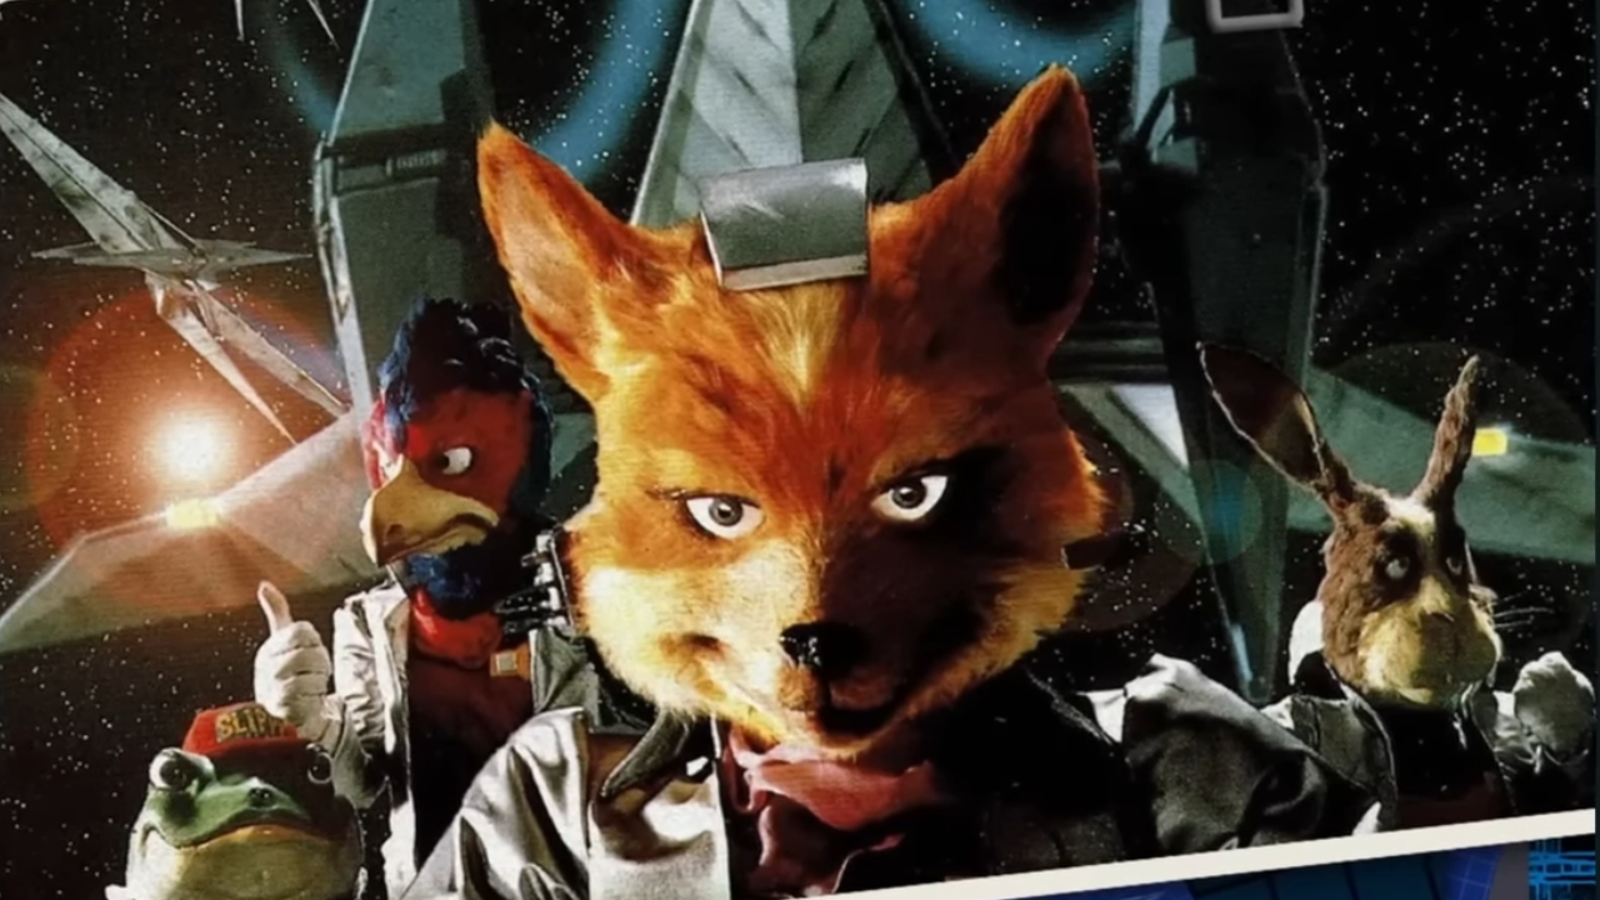 Retro Game Reviews: Star Fox (SNES review)